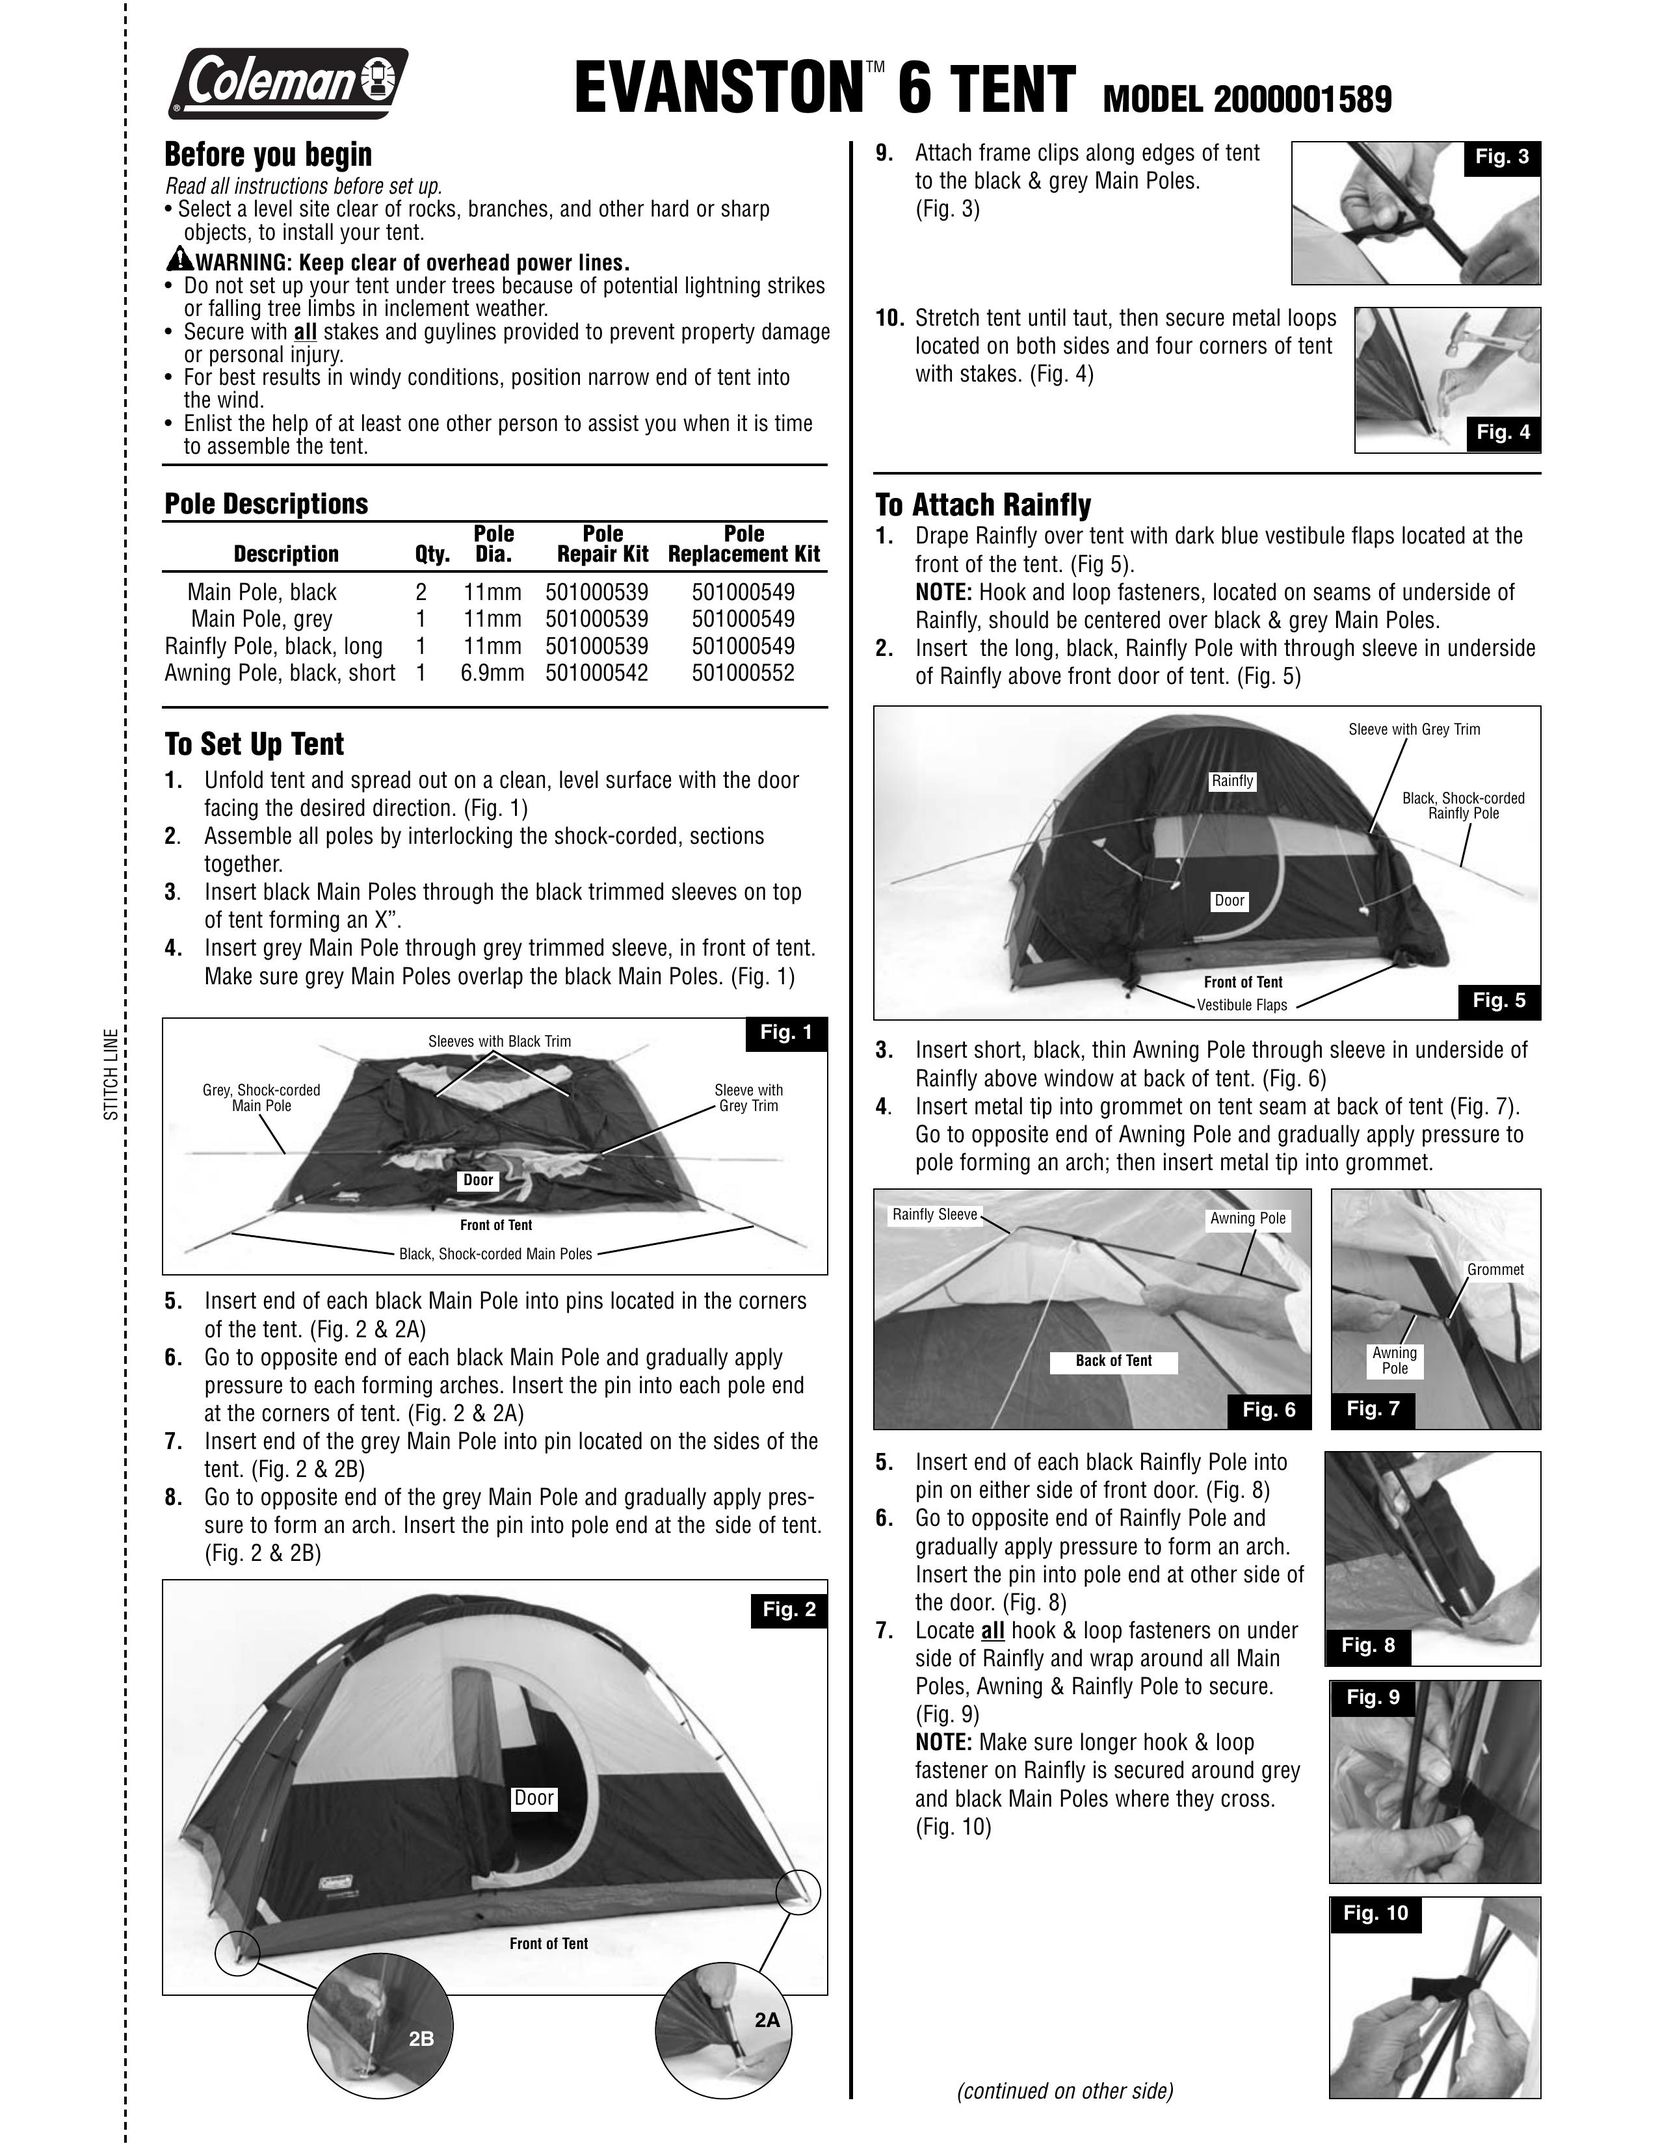 Coleman 2000001589 Tent User Manual